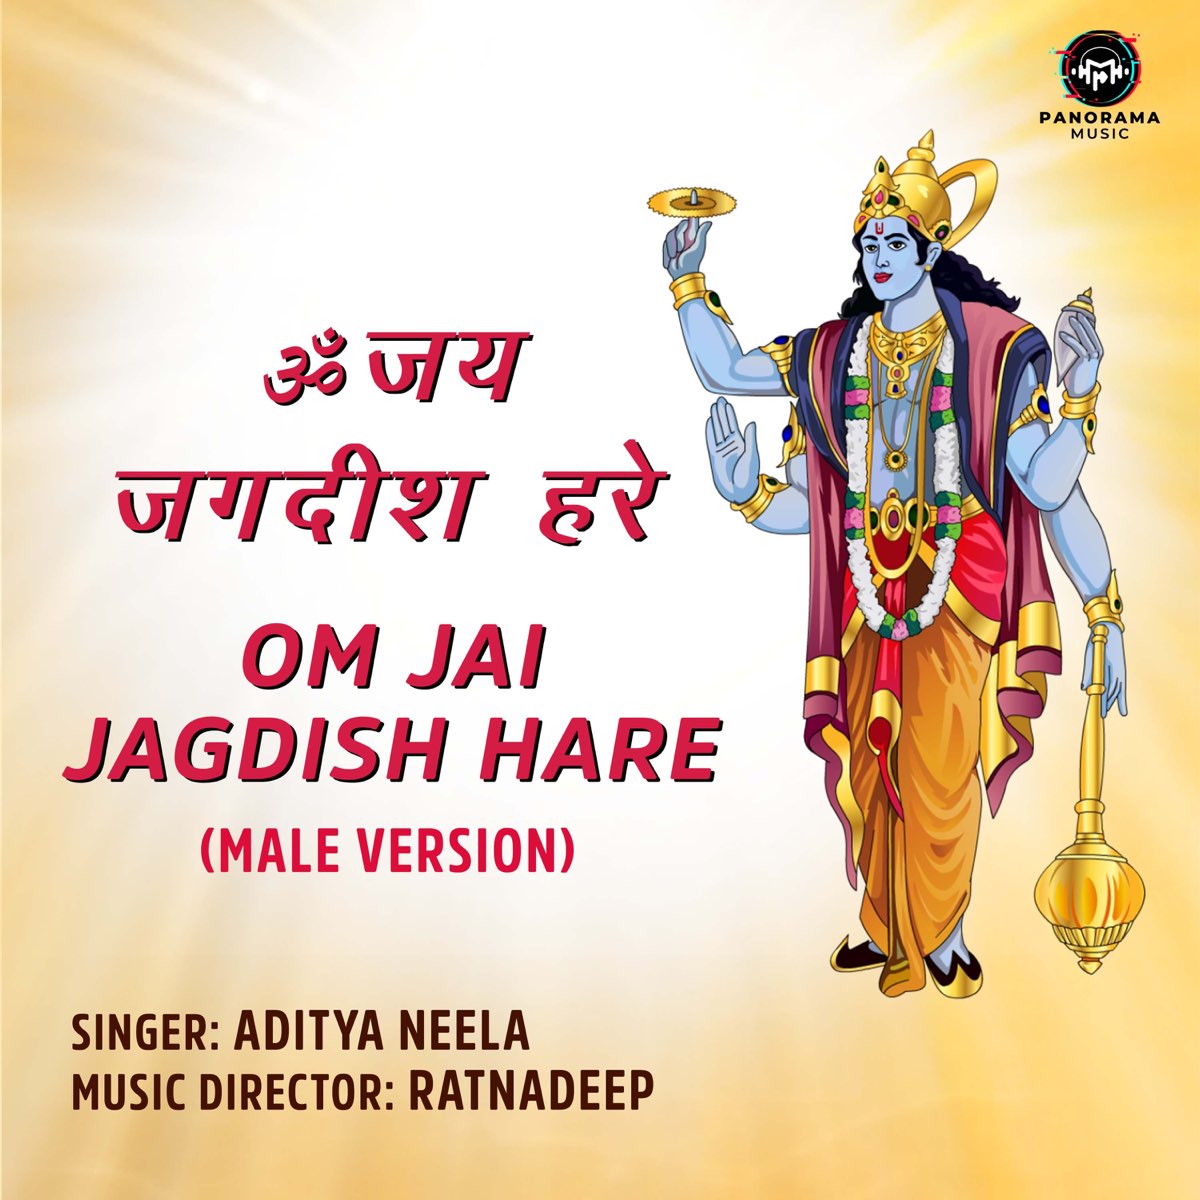 Om Jai Jagdish Hare (Male Version) - Single by Aditya Neela on Apple Music